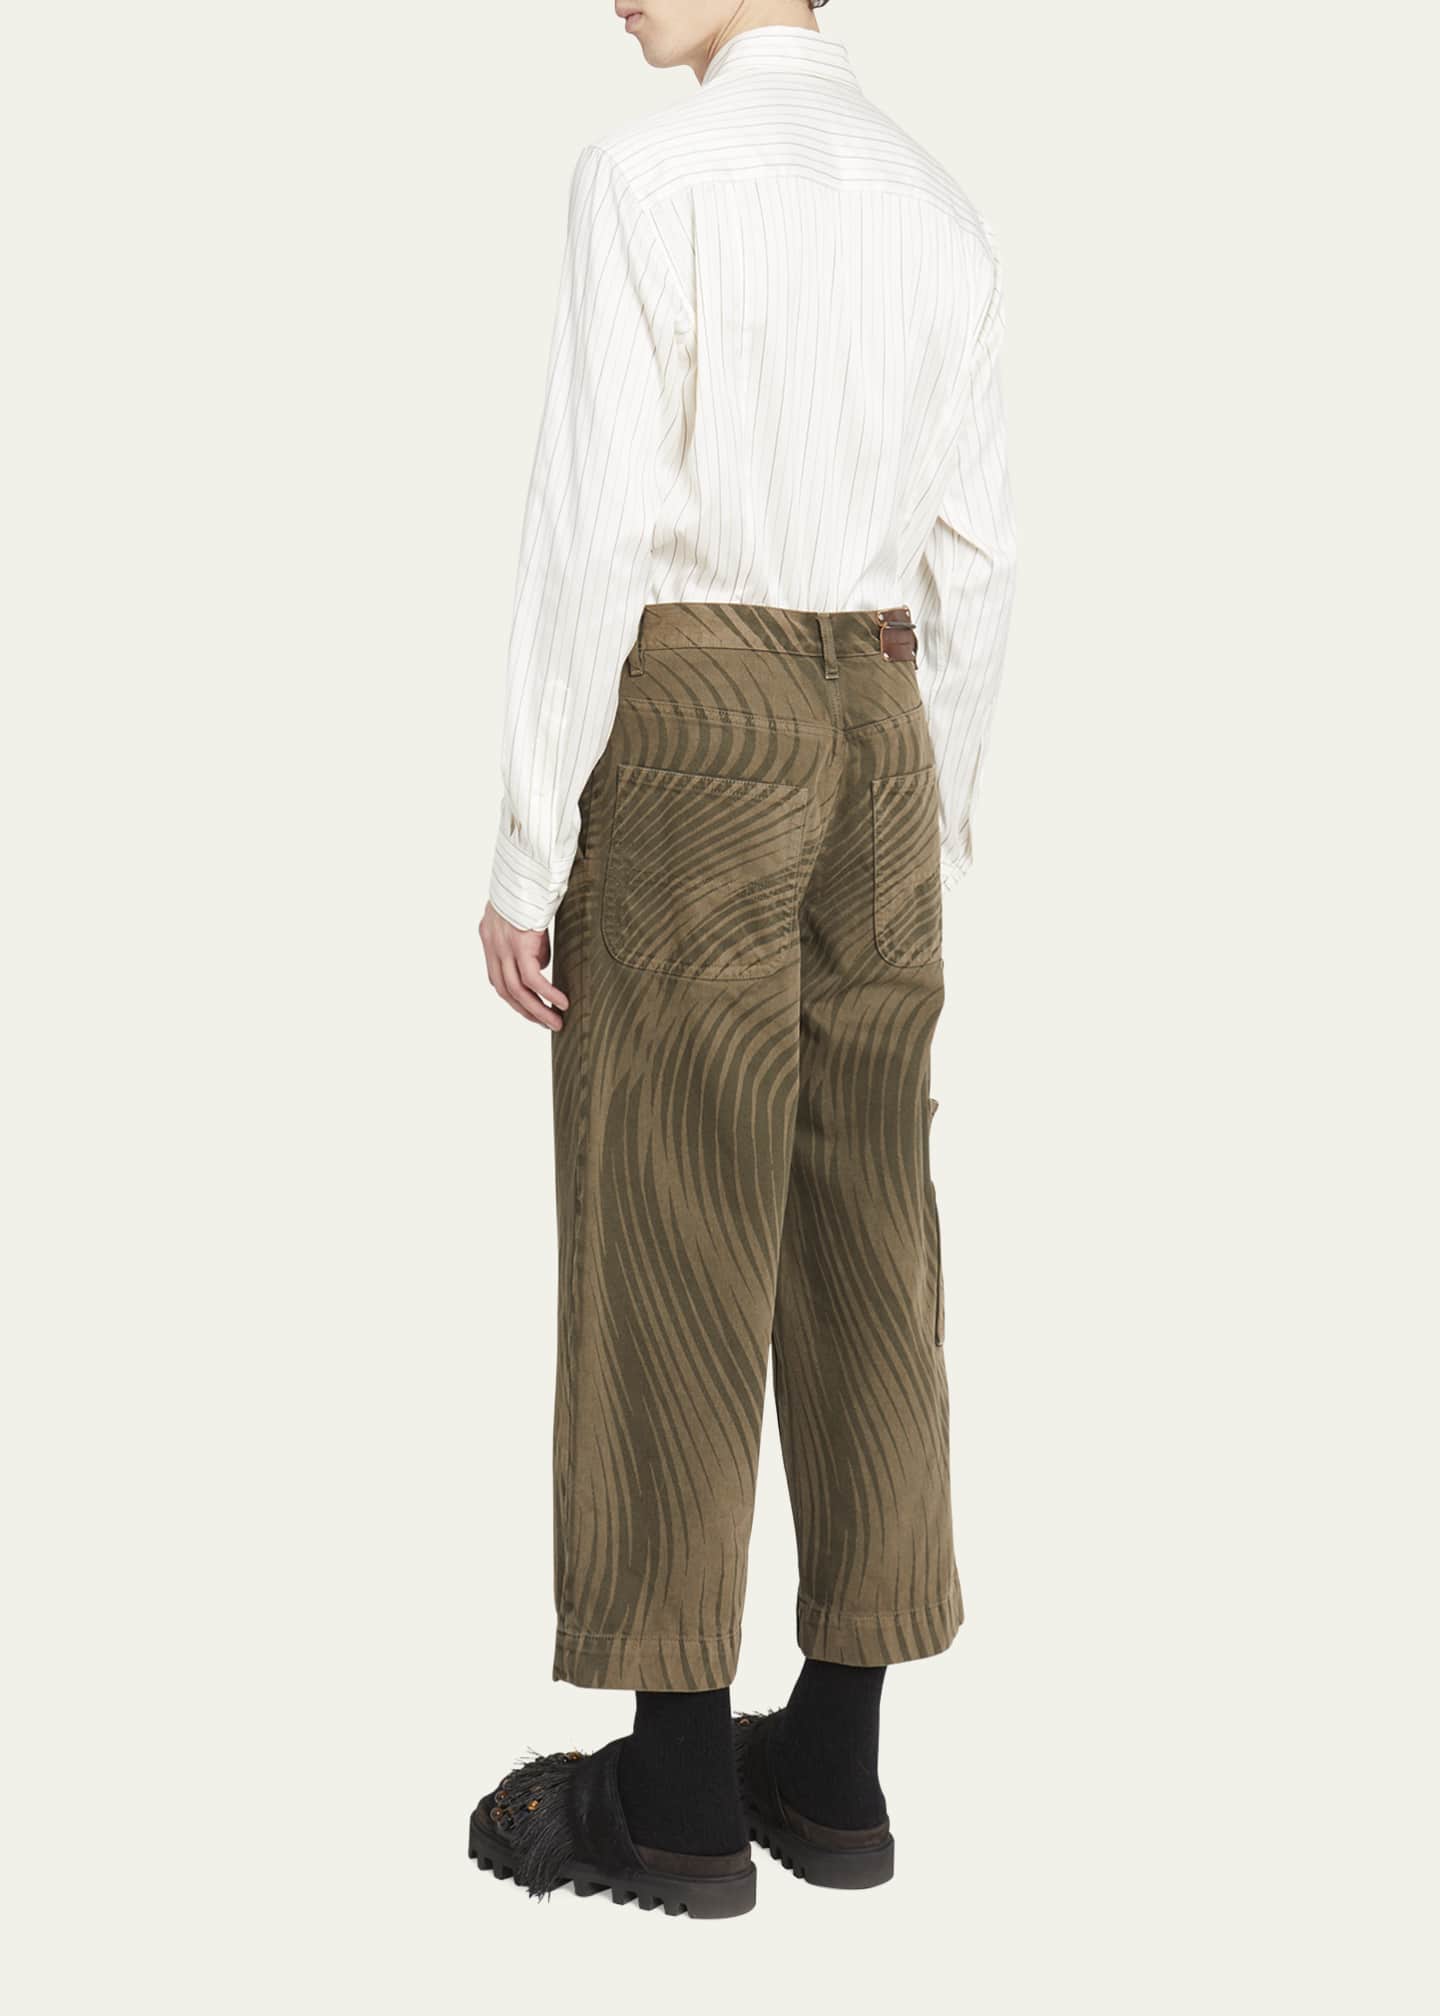 Dries Van Noten Men's Cropped Wave-Print Pants - Bergdorf Goodman